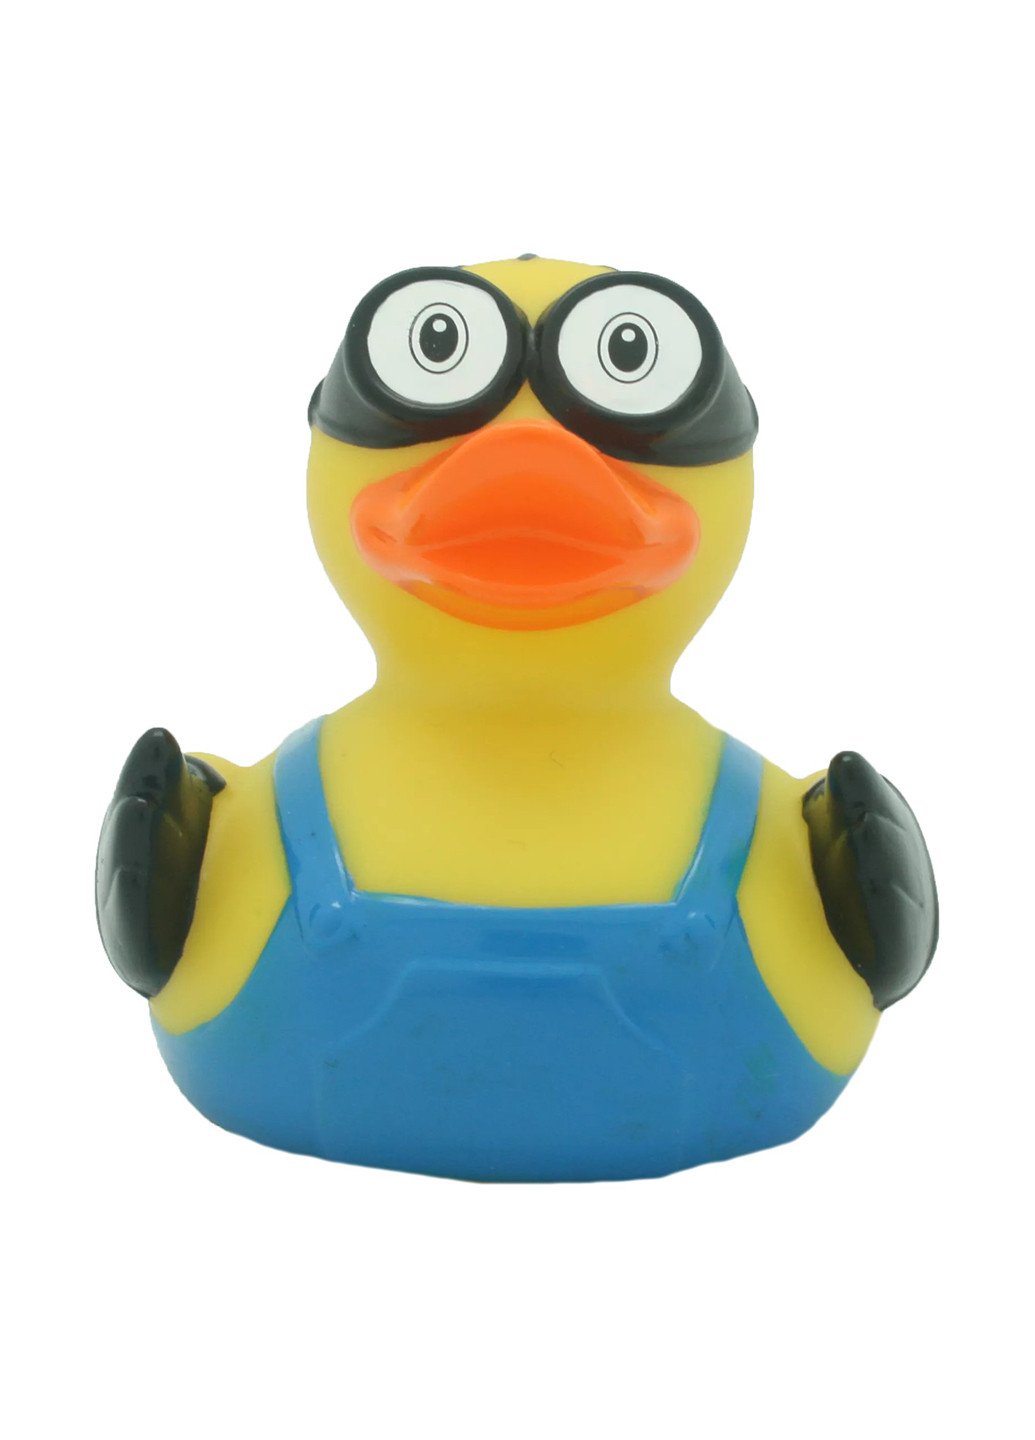 Іграшка для купання Качка, 8,5x8,5x7,5 см Funny Ducks (250618801)